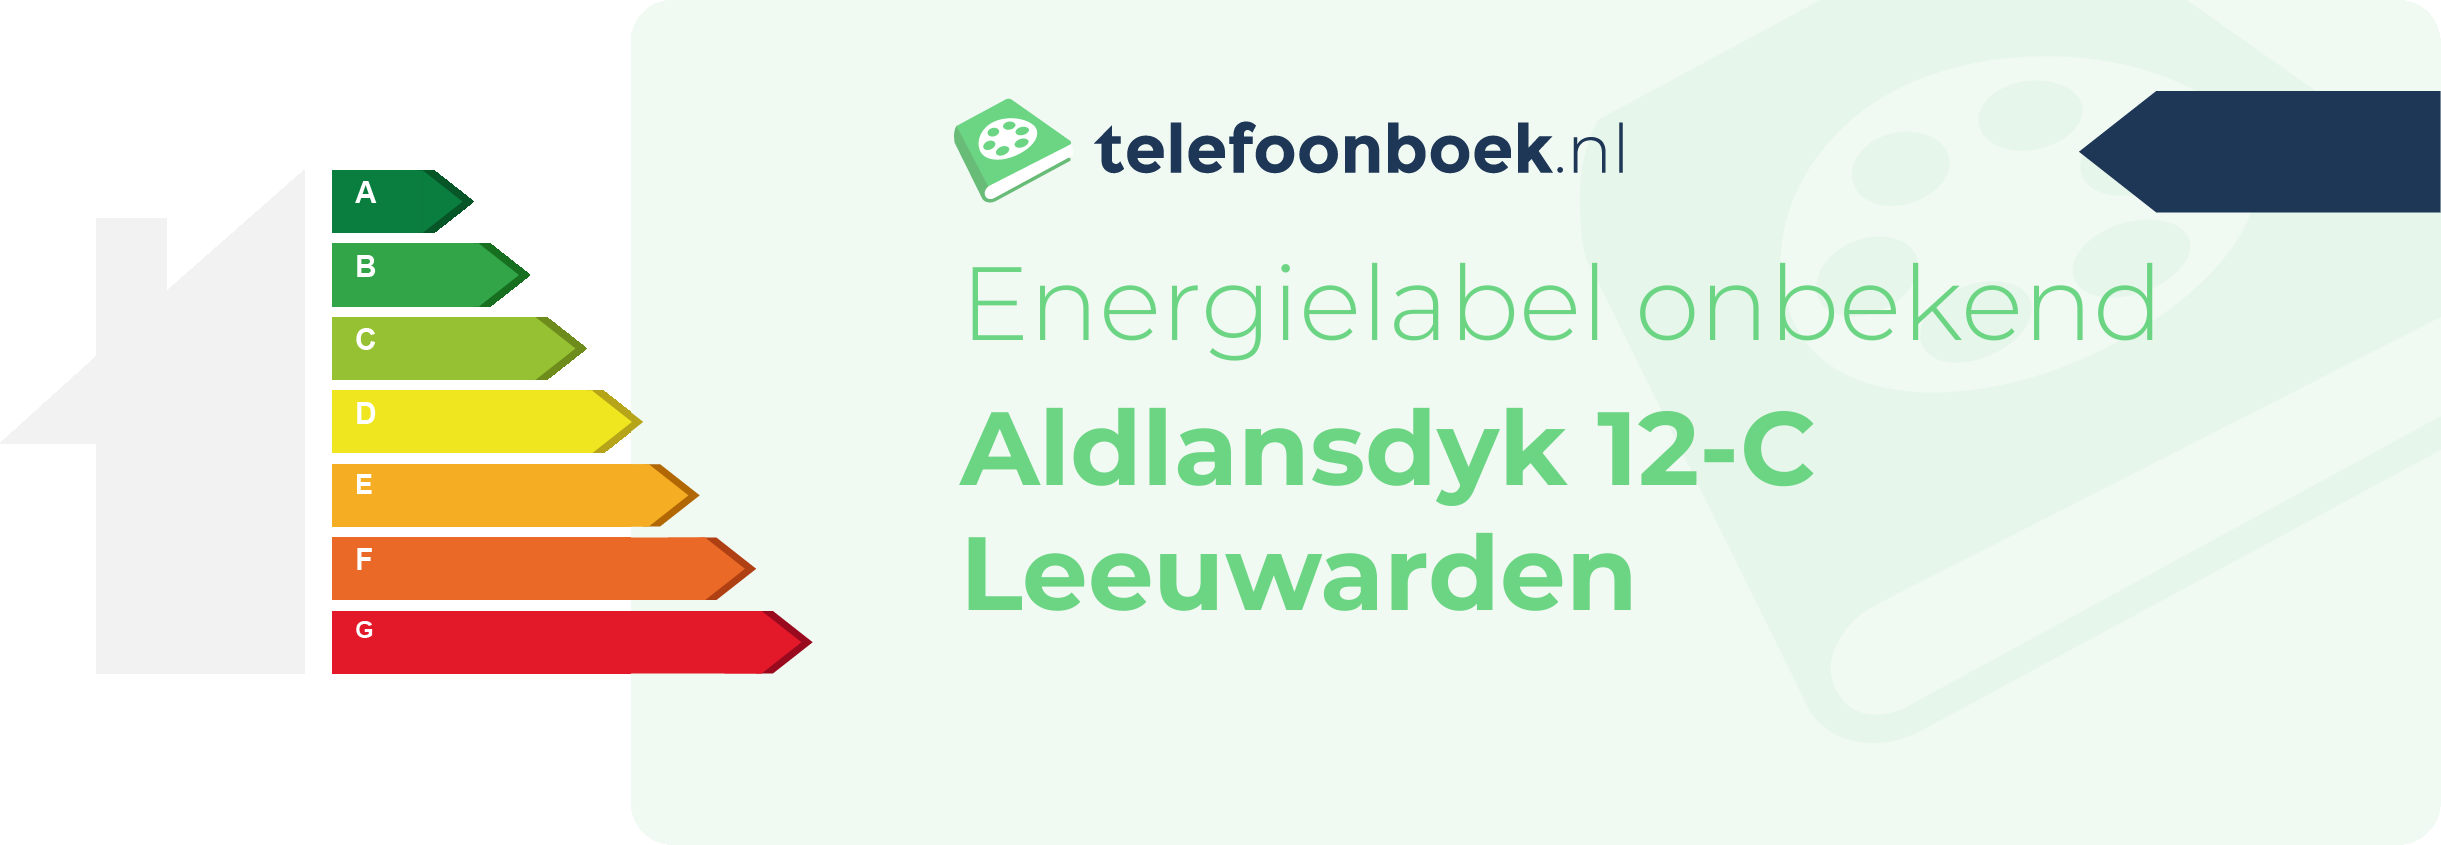 Energielabel Aldlansdyk 12-C Leeuwarden